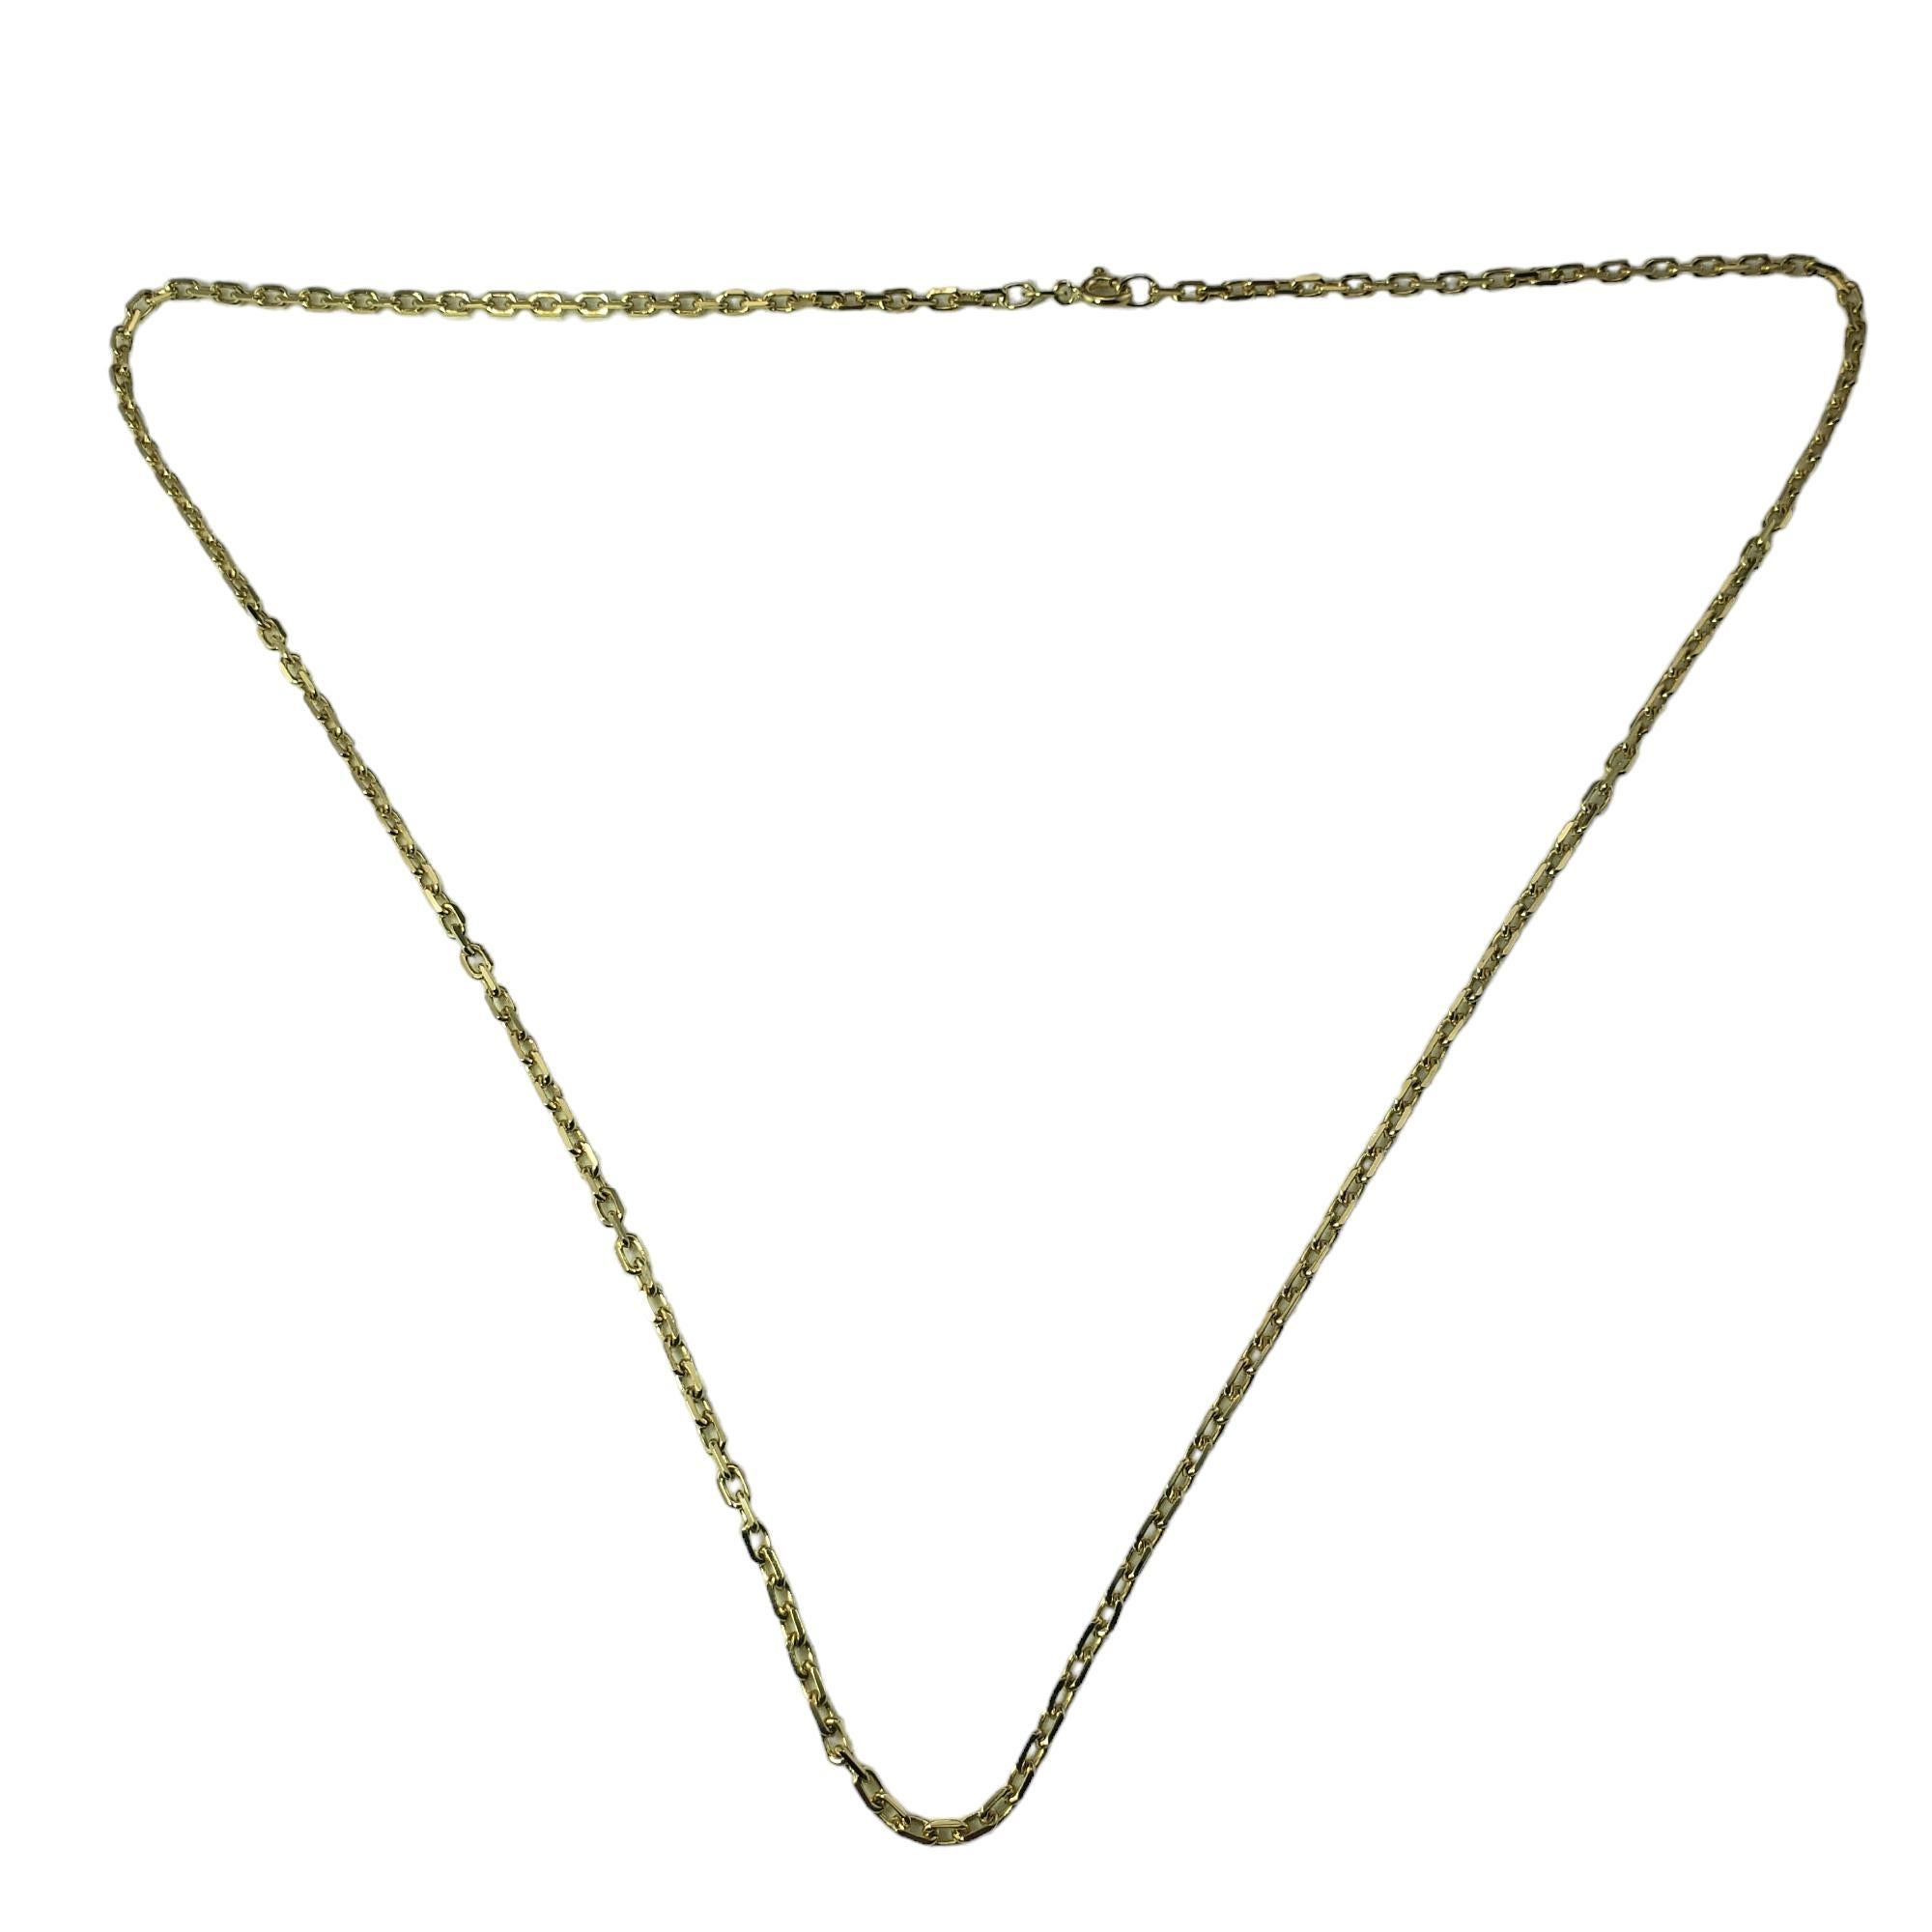 Vintage 14 Karat Gelbgold Link Halskette-

Diese reizende Gliederkette ist aus 14-karätigem Gelbgold gefertigt und mit vielen Details versehen.  Breite:  2 mm.

Größe: 22 Zoll

Gestempelt: 14K

Gewicht: 10,3 g / 6,6 dwt.

Sehr guter Zustand,